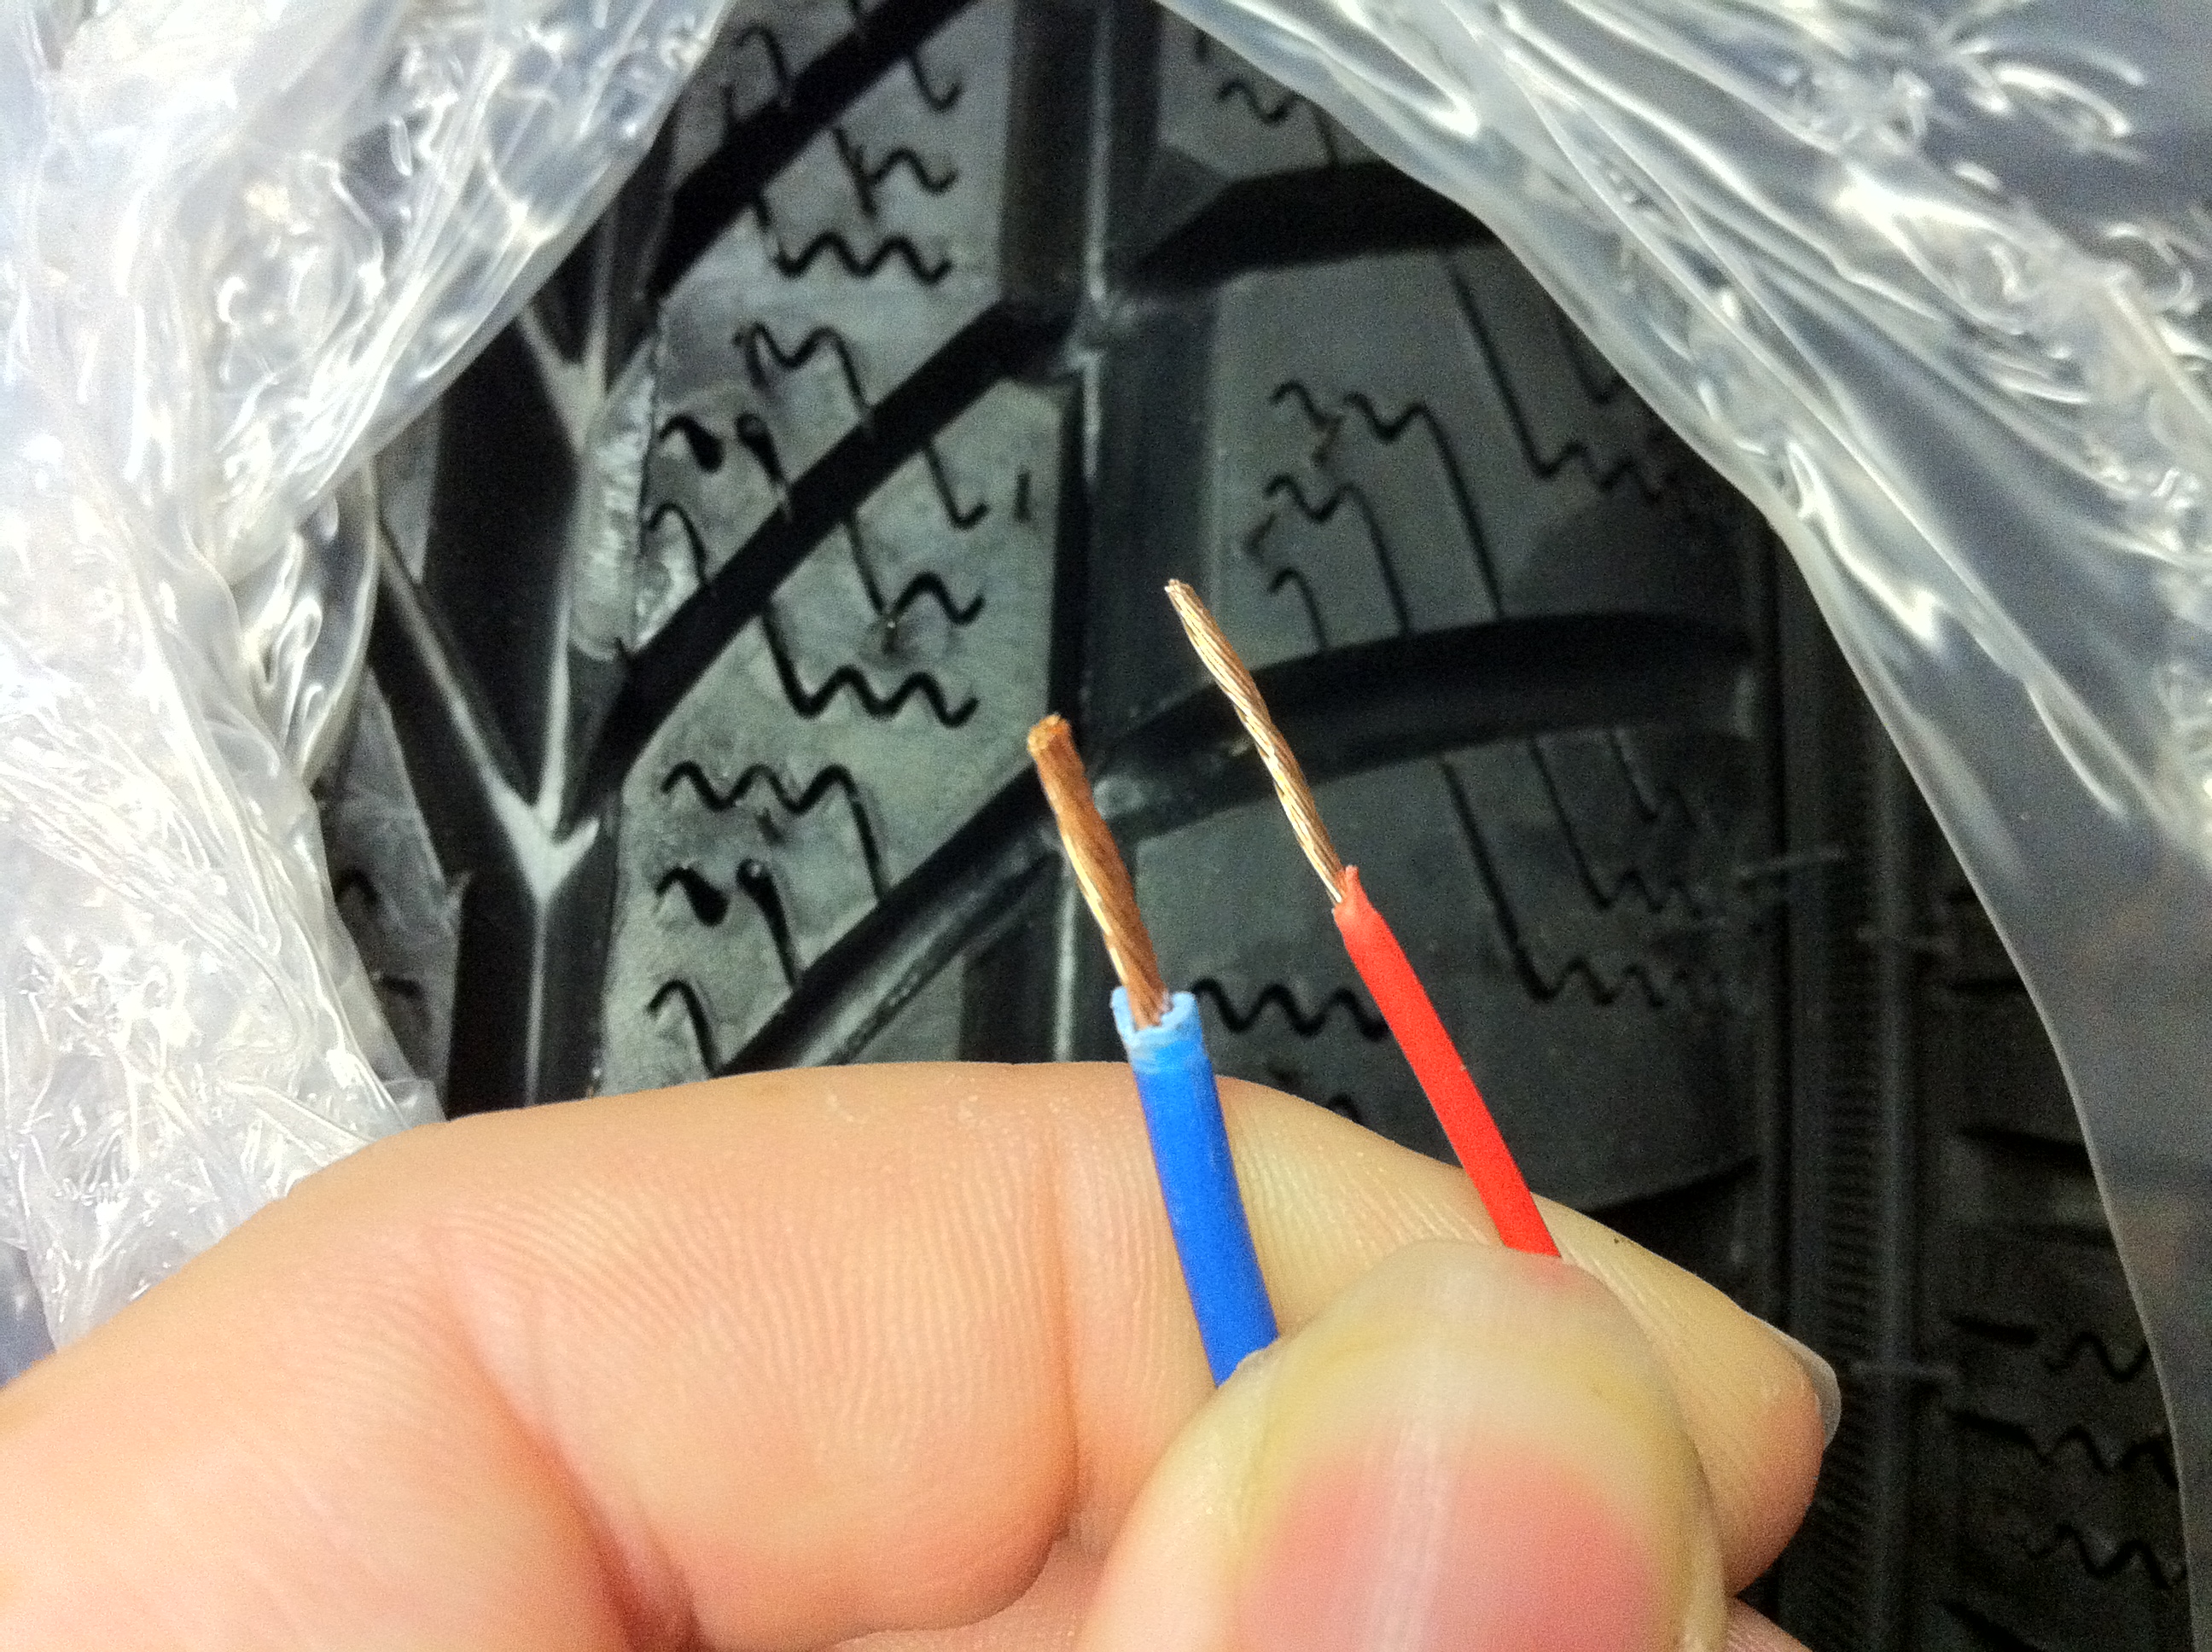 11amp wiring vs higher grade wiring